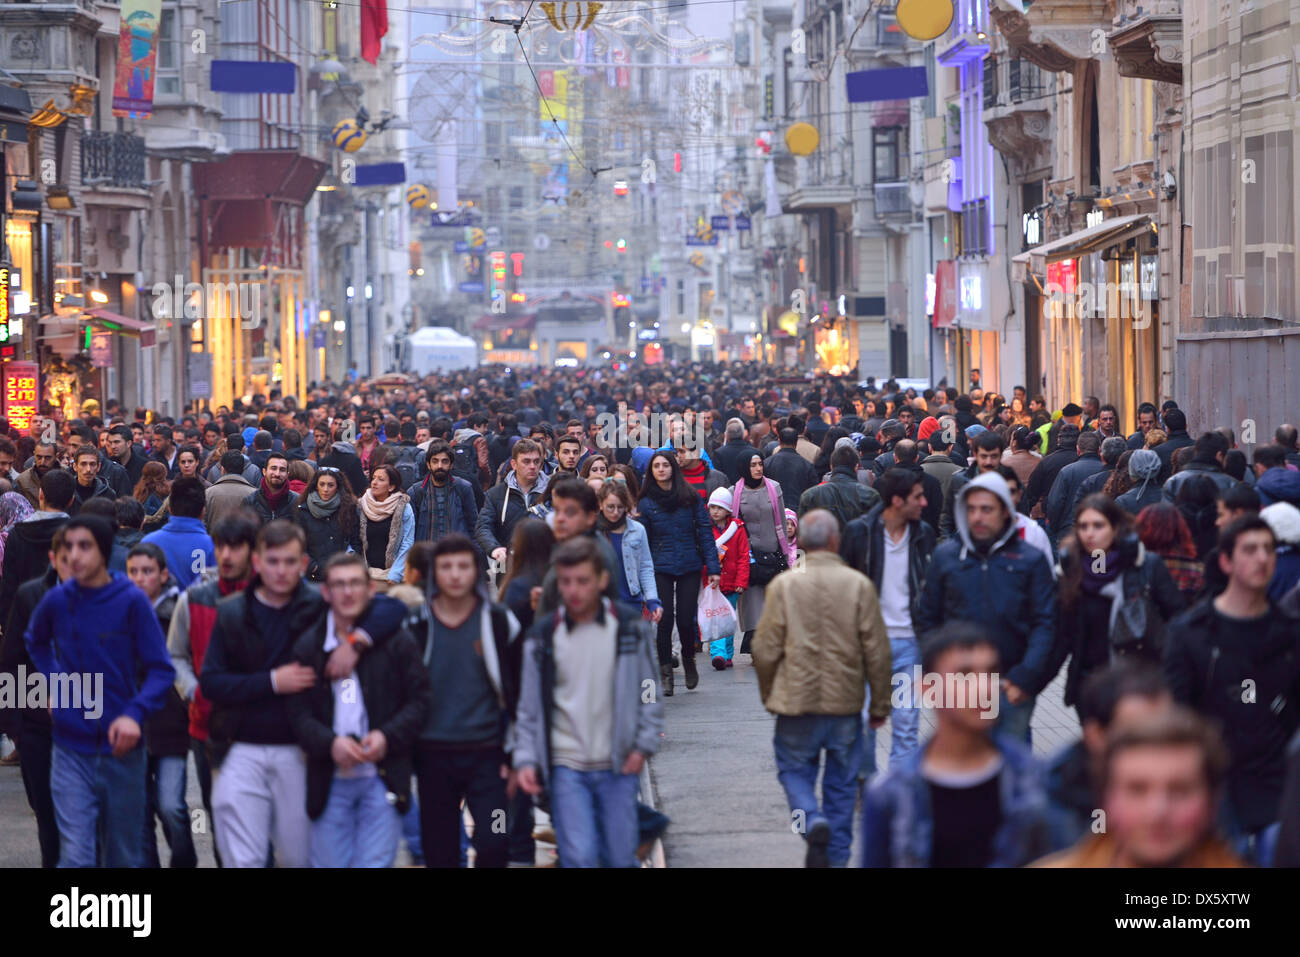 ISTANBUL, TURKEY - JANUARY 12: People walking on Istiklal Street on January 12, 2014 in Istanbul, Turkey. Stock Photo